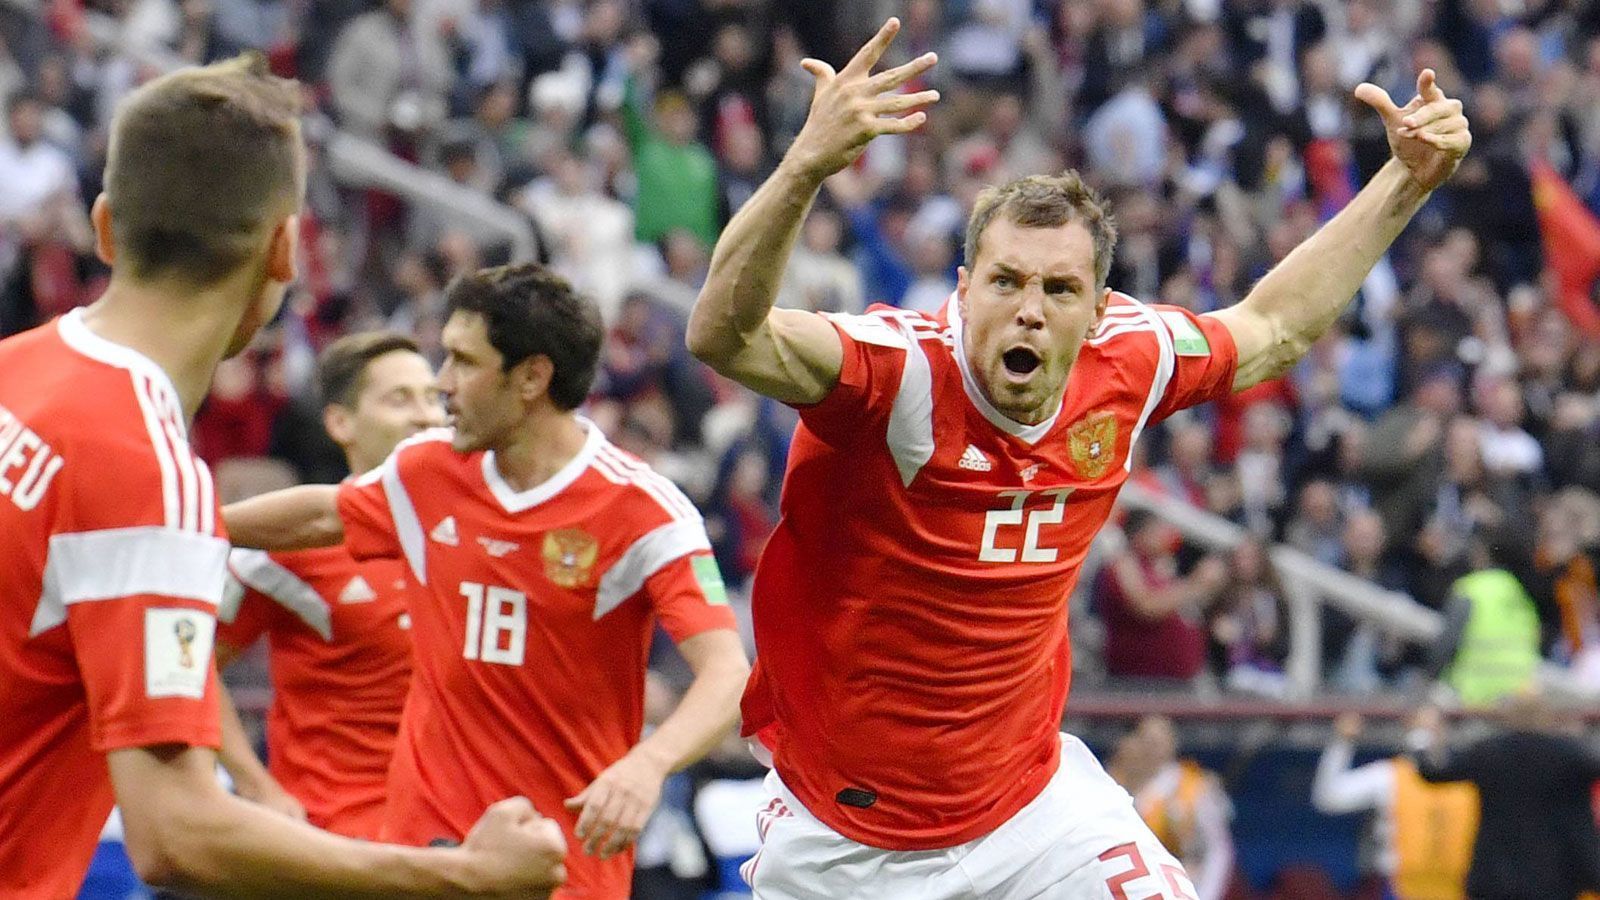 
                <strong>Höchster Sieg im Eröffnungsspiel</strong><br>
                5:0! Russland stellt als Gastgeber der WM 2018 gleich im Eröffnungsspiel einen neuen WM-Rekord auf. Noch nie seit Einführung der Eröffnungsspiele 1966 gab es einen so hohen Sieg im Auftaktspiel einer WM-Endrunde. Bisheriger Rekordhalter war Deutschland mit dem 4:2 gegen Costa Rica beim Sommermärchen 2006.
              